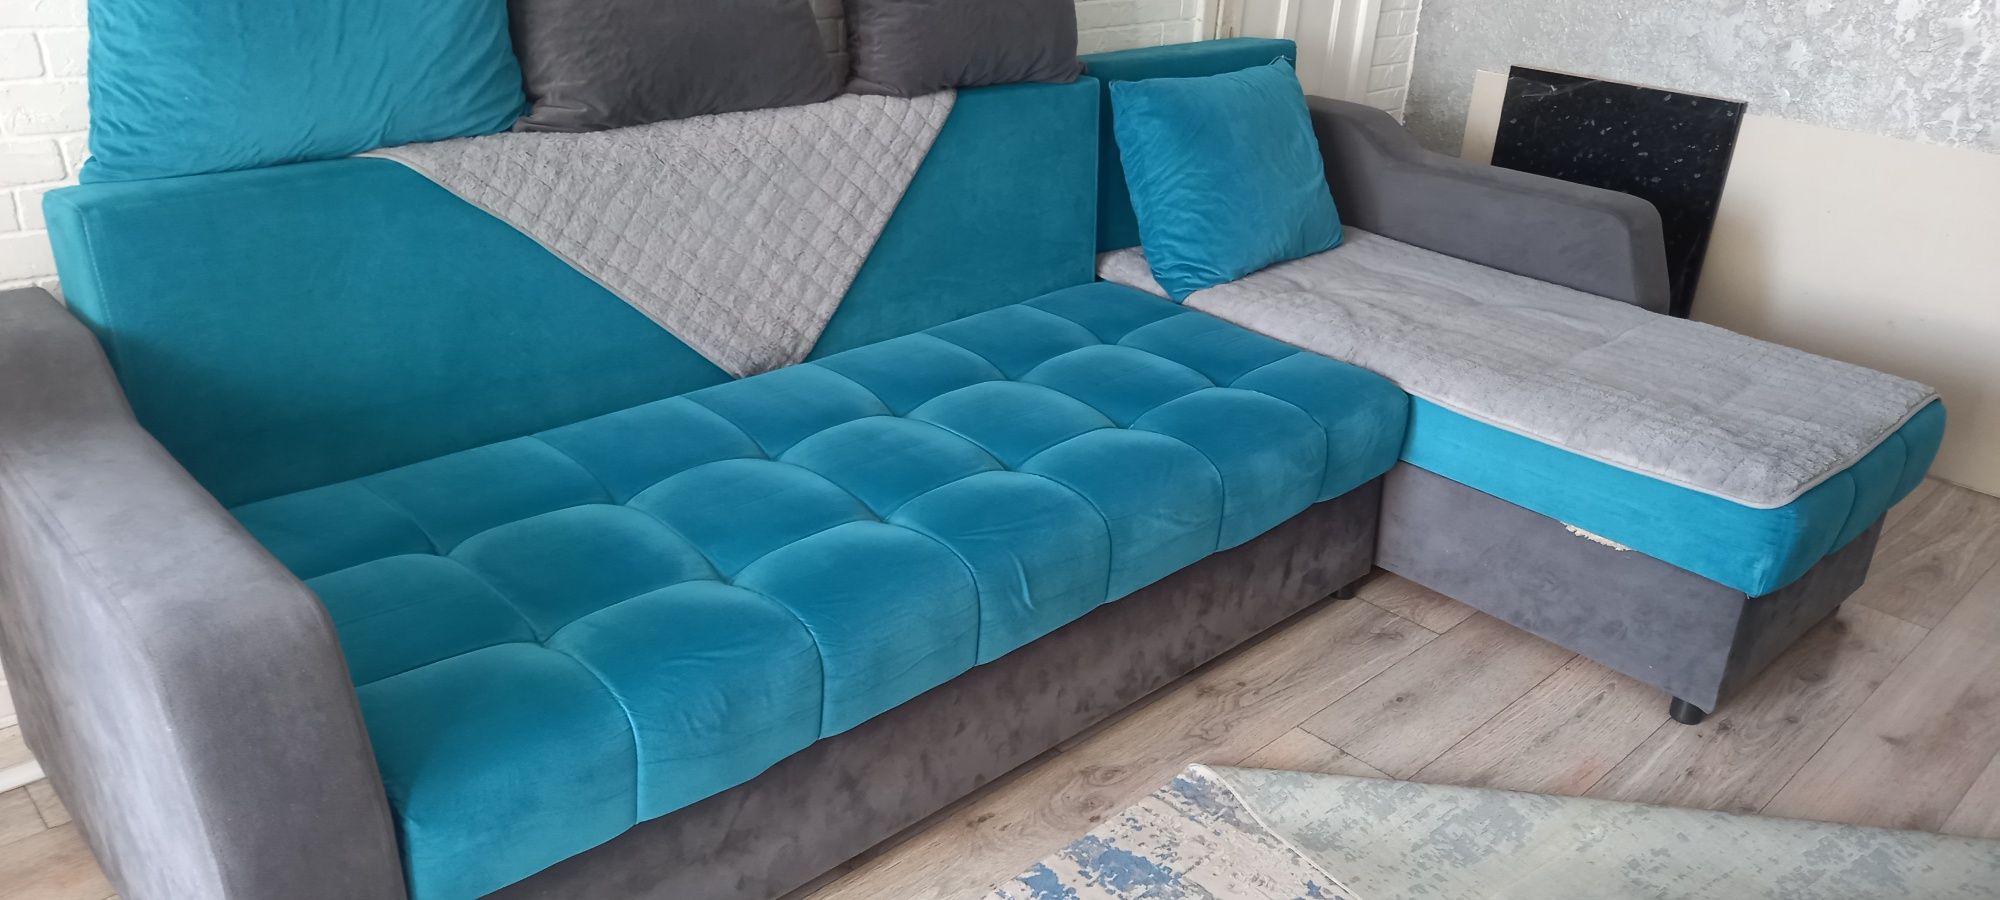 Продам угловой диван яркого цвета